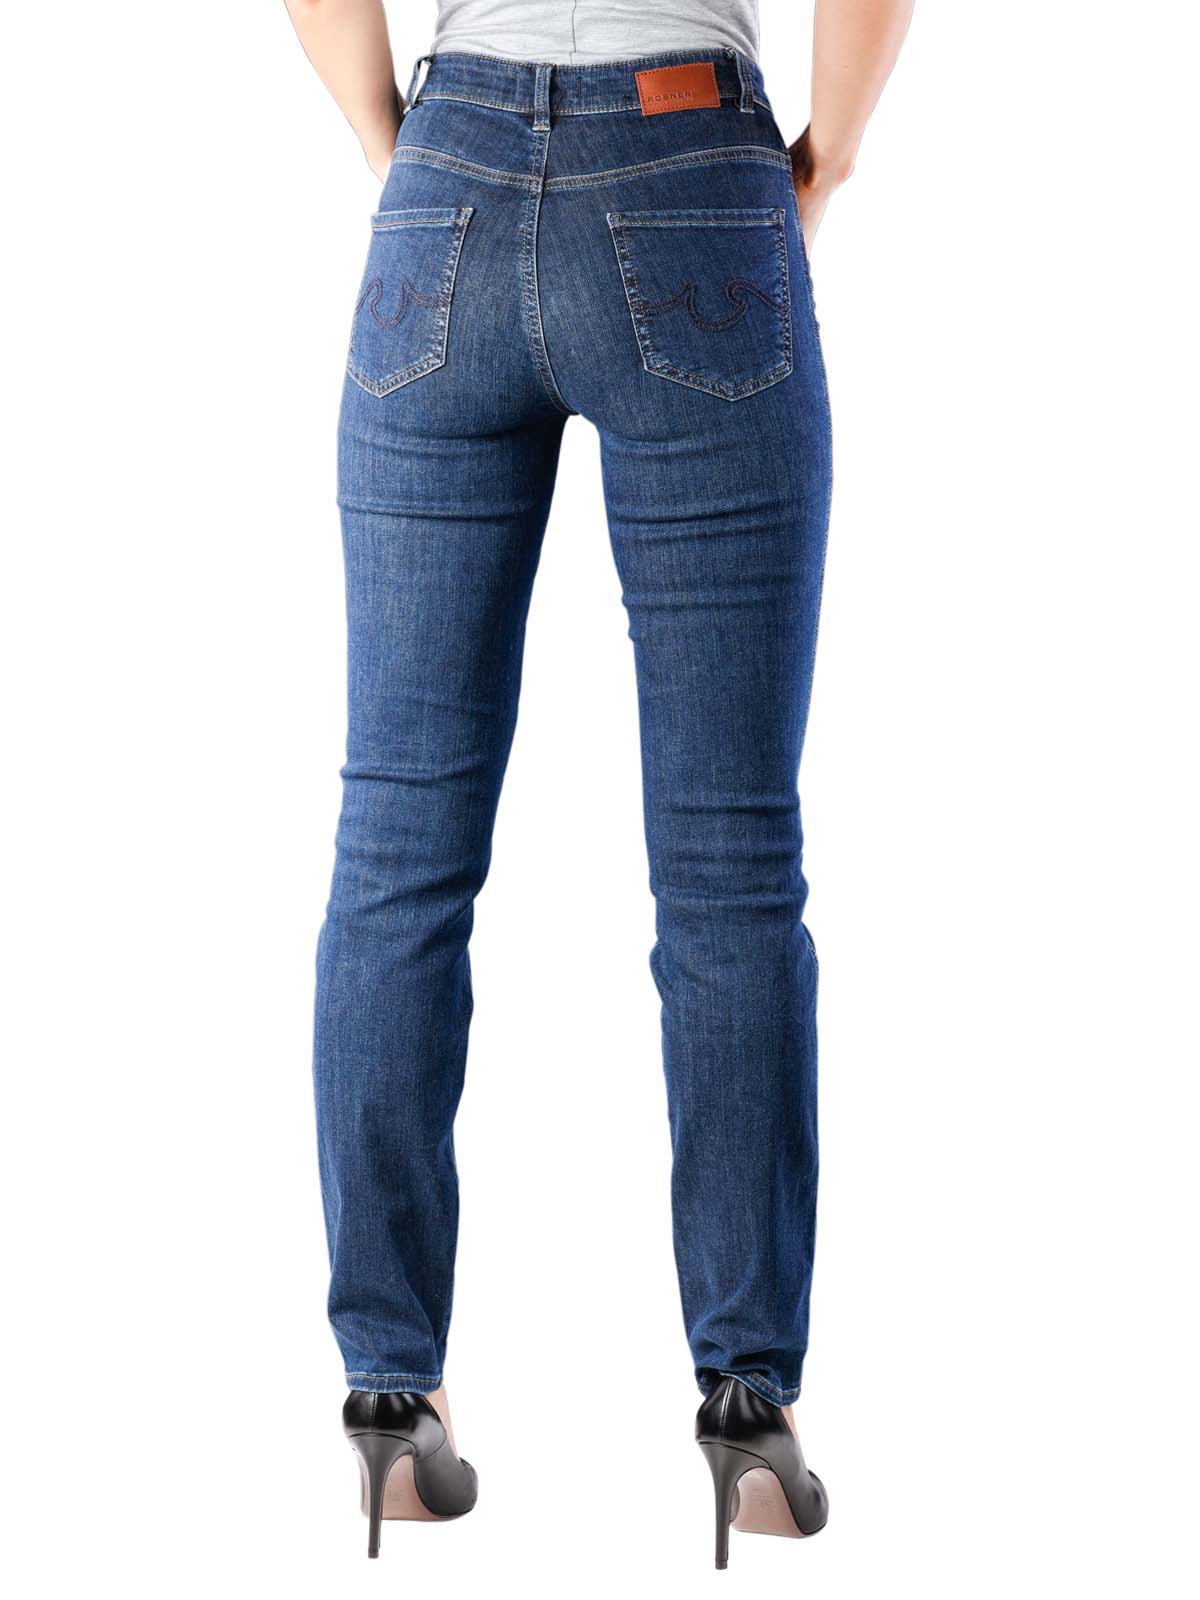 Audrey 1 Jeans Rosner Jeans Femme | Livraison gratuite sur BEBASIC.CH - LOOK GOOD